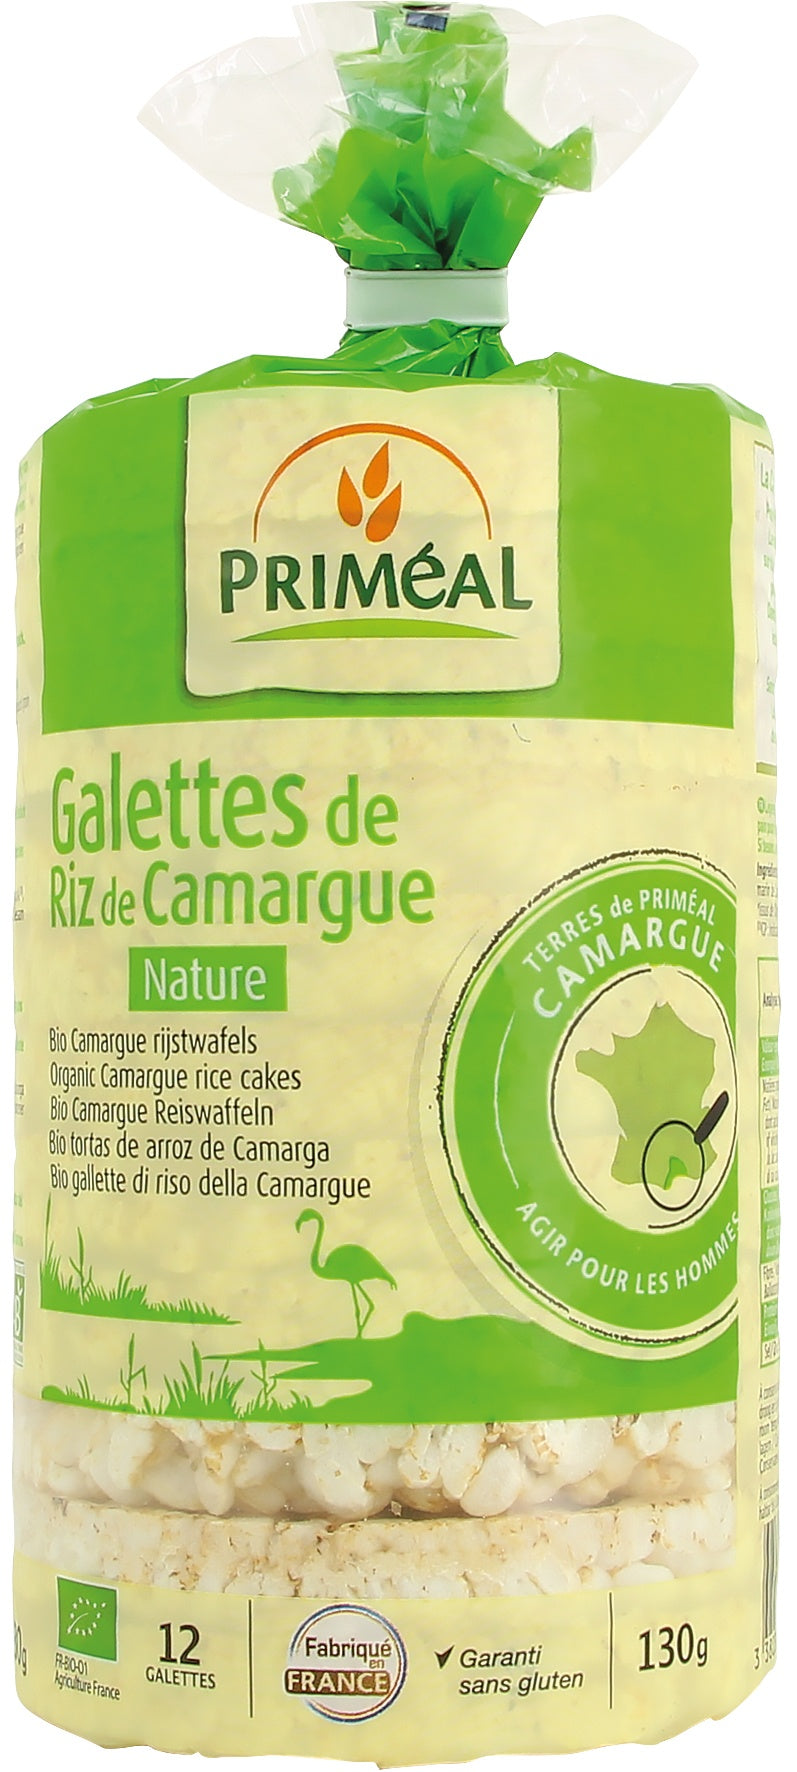 Galettes de riz de camargue nature - Priméal